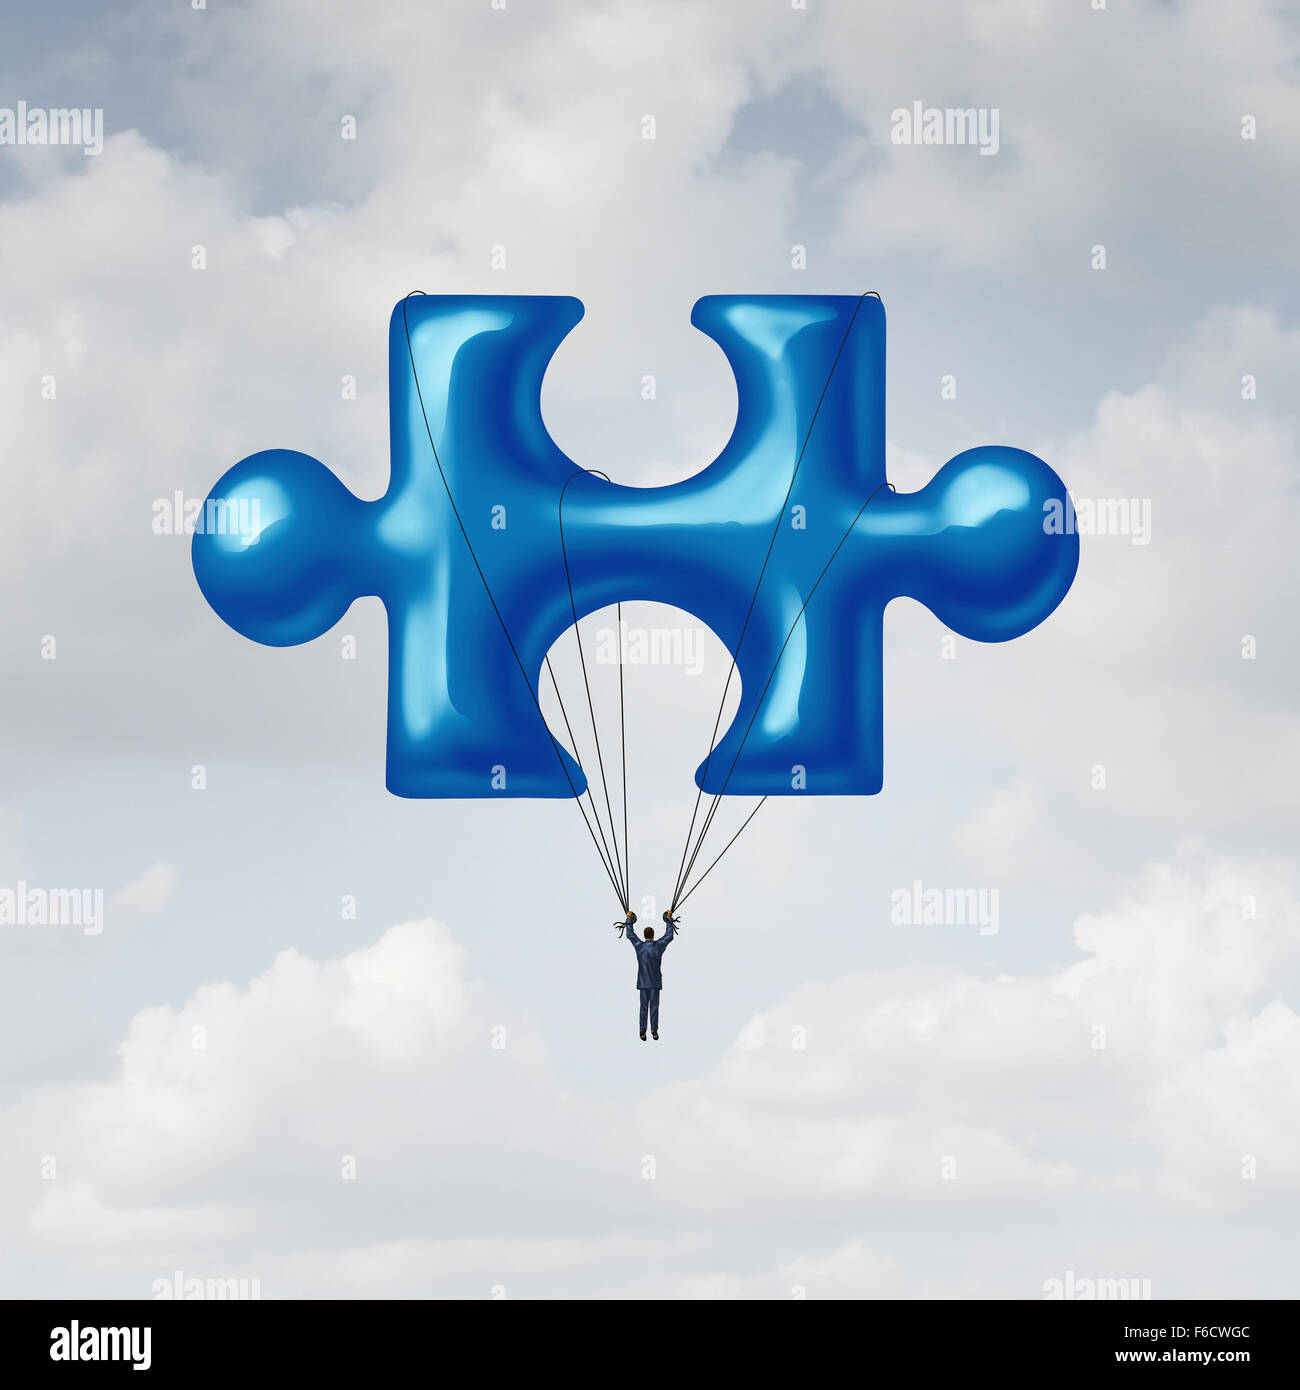 Leadership puzzle concept come una metafora della soluzione con un imprenditore floating fino al cielo con un palloncino a forma di una chiave fondamentale unità di collegamento per completare un progetto. Foto Stock